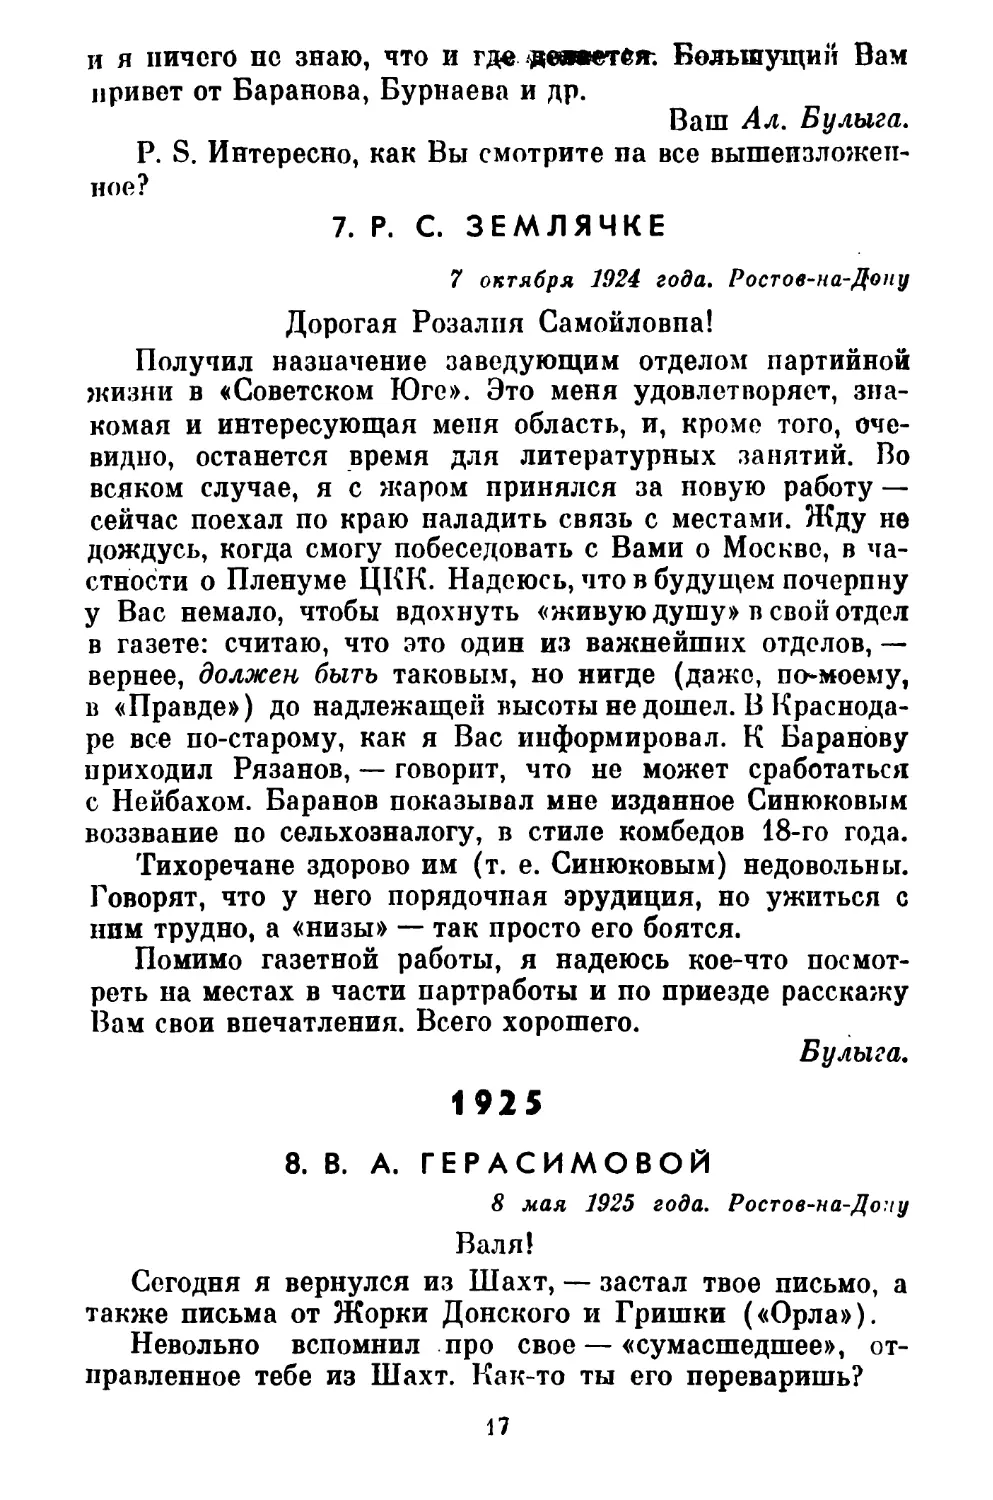 7. Р. С. ЗЕМЛЯЧКЕ
1925